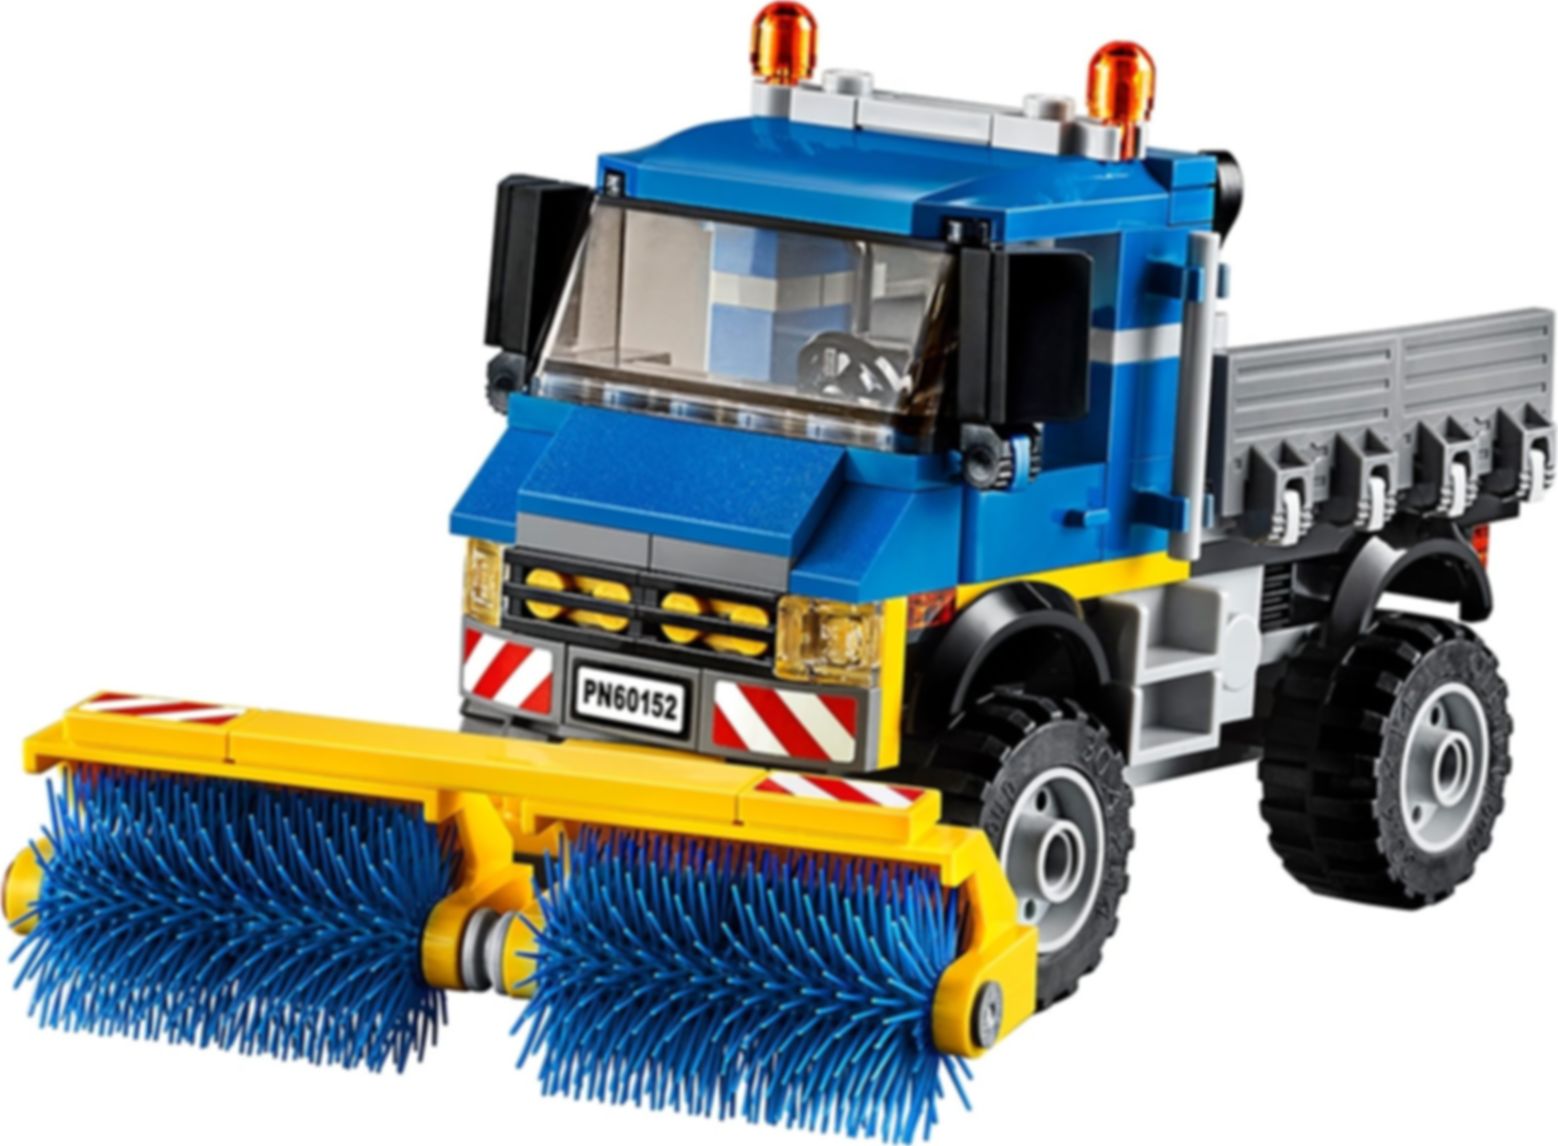 LEGO® City Barredora y excavadora partes